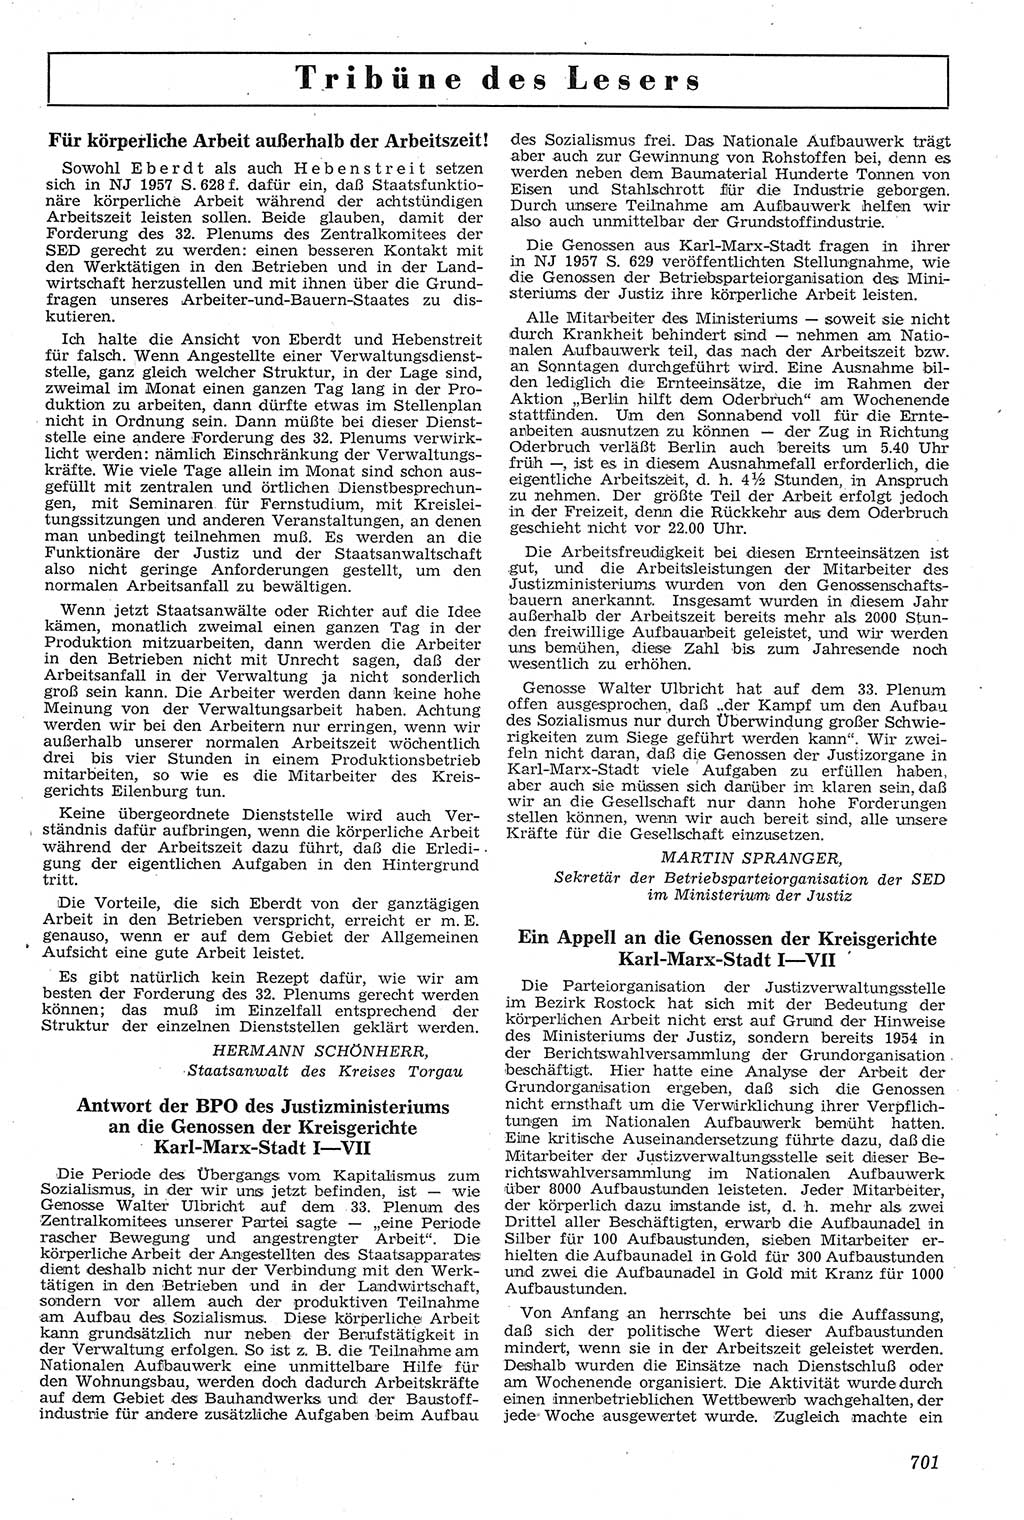 Neue Justiz (NJ), Zeitschrift für Recht und Rechtswissenschaft [Deutsche Demokratische Republik (DDR)], 11. Jahrgang 1957, Seite 701 (NJ DDR 1957, S. 701)